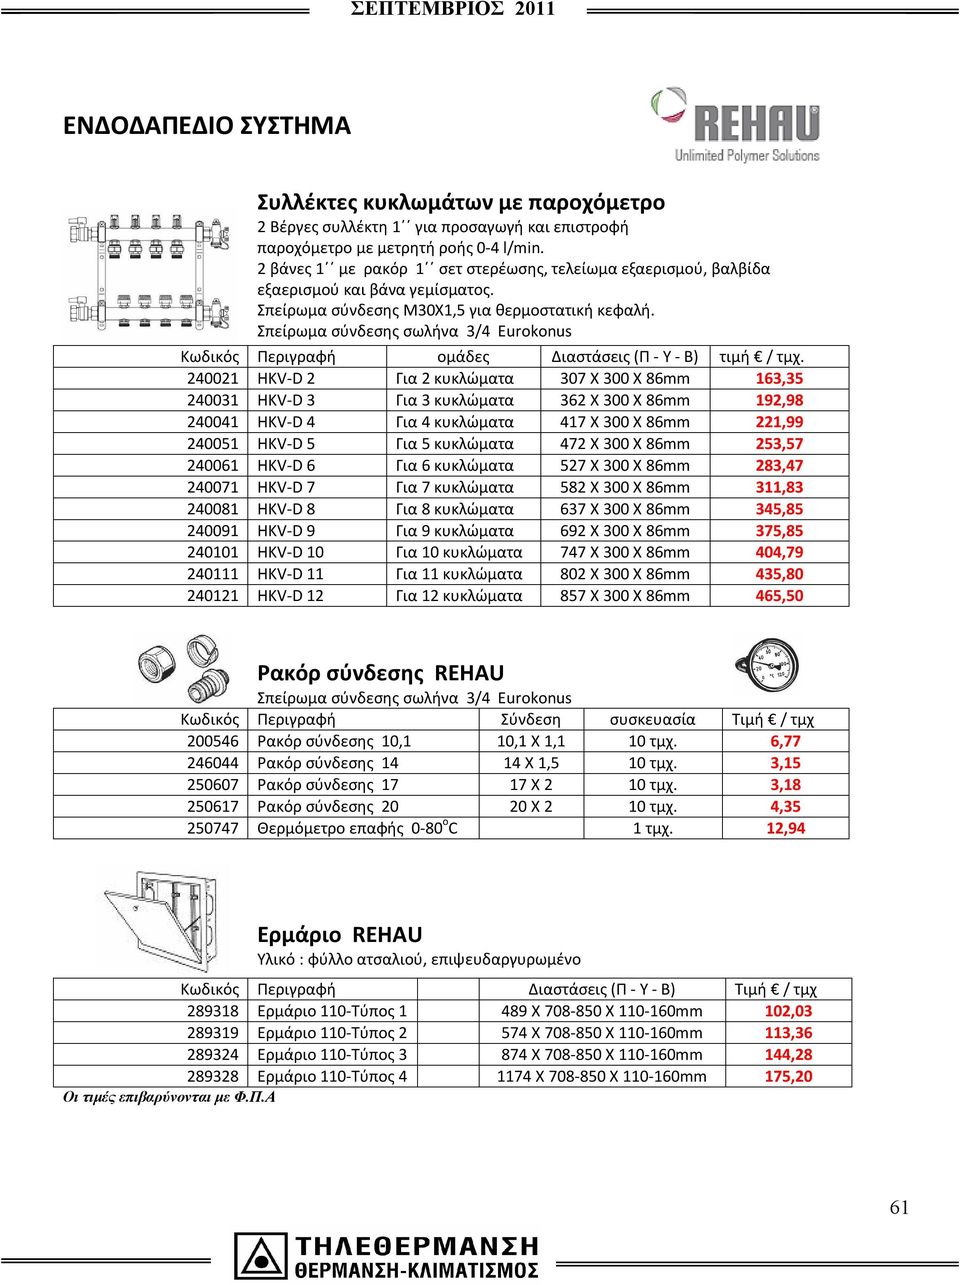 Σπείρωμα σύνδεσης σωλήνα 3/4 Eurokonus Κωδικός Περιγραφή ομάδες Διαστάσεις (Π - Υ - Β) τιμή / τμχ.